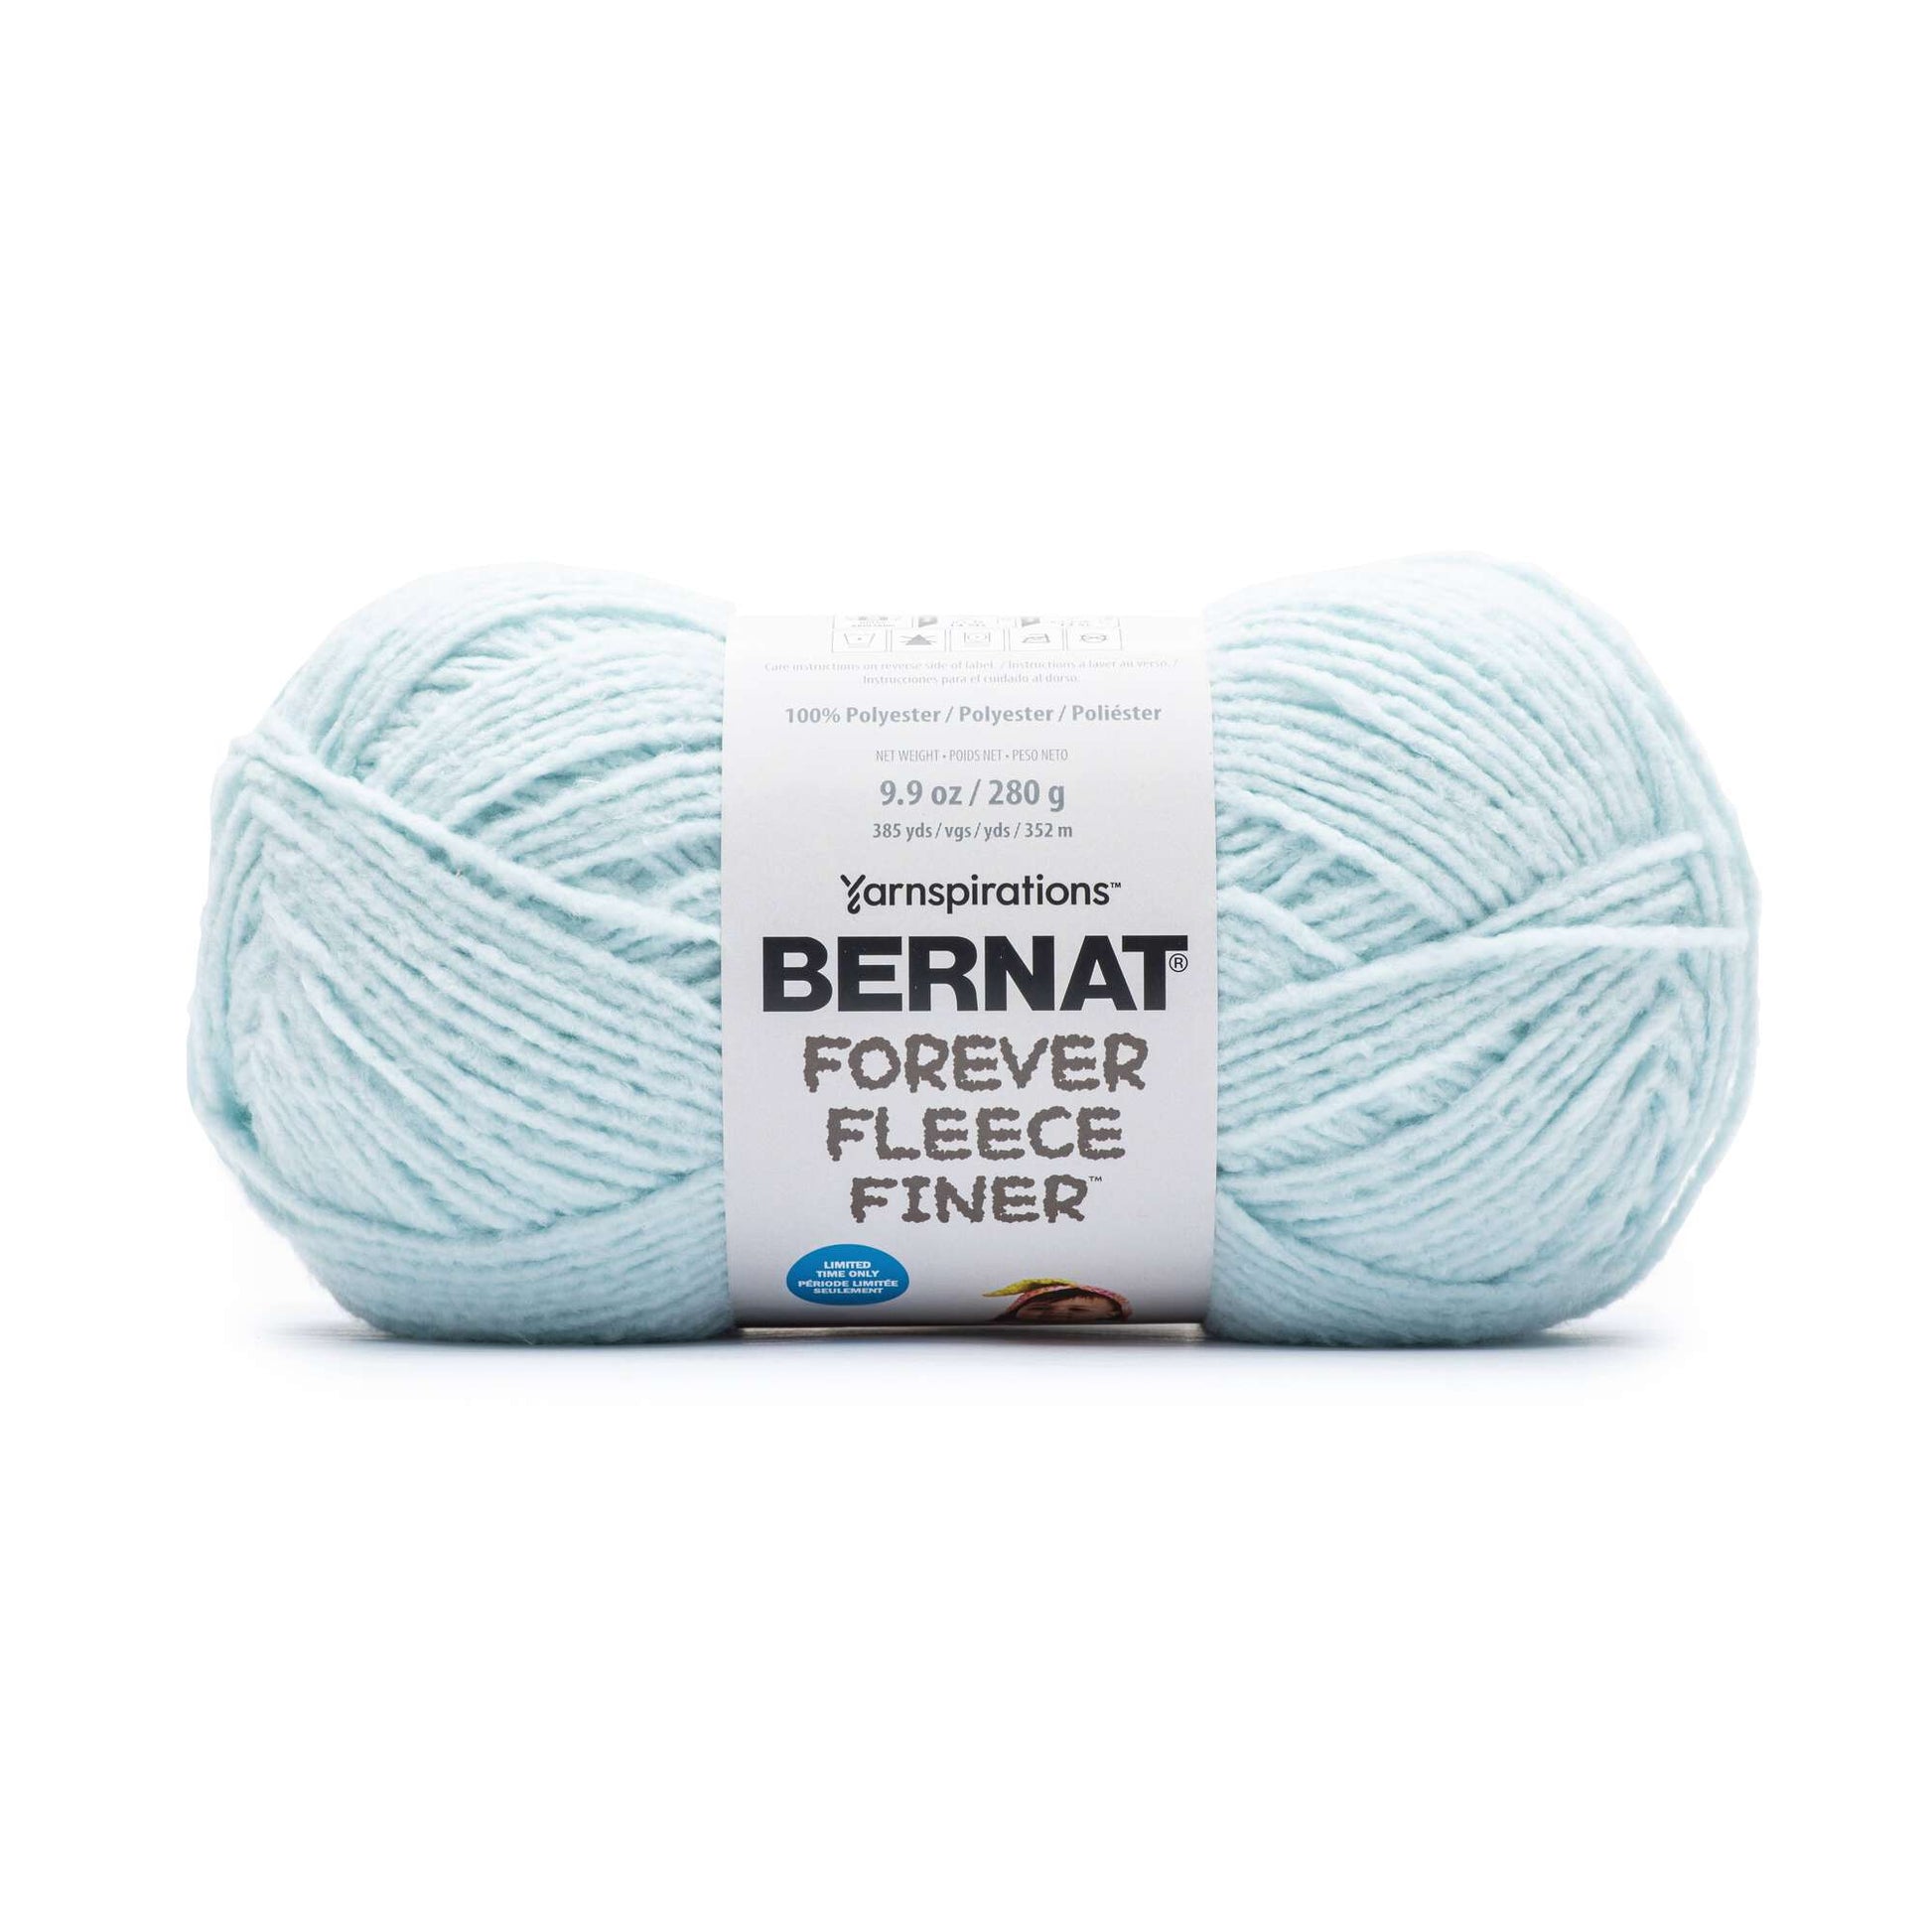 Bernat Forever Fleece Finer Yarn - Discontinued Shades Light Sky